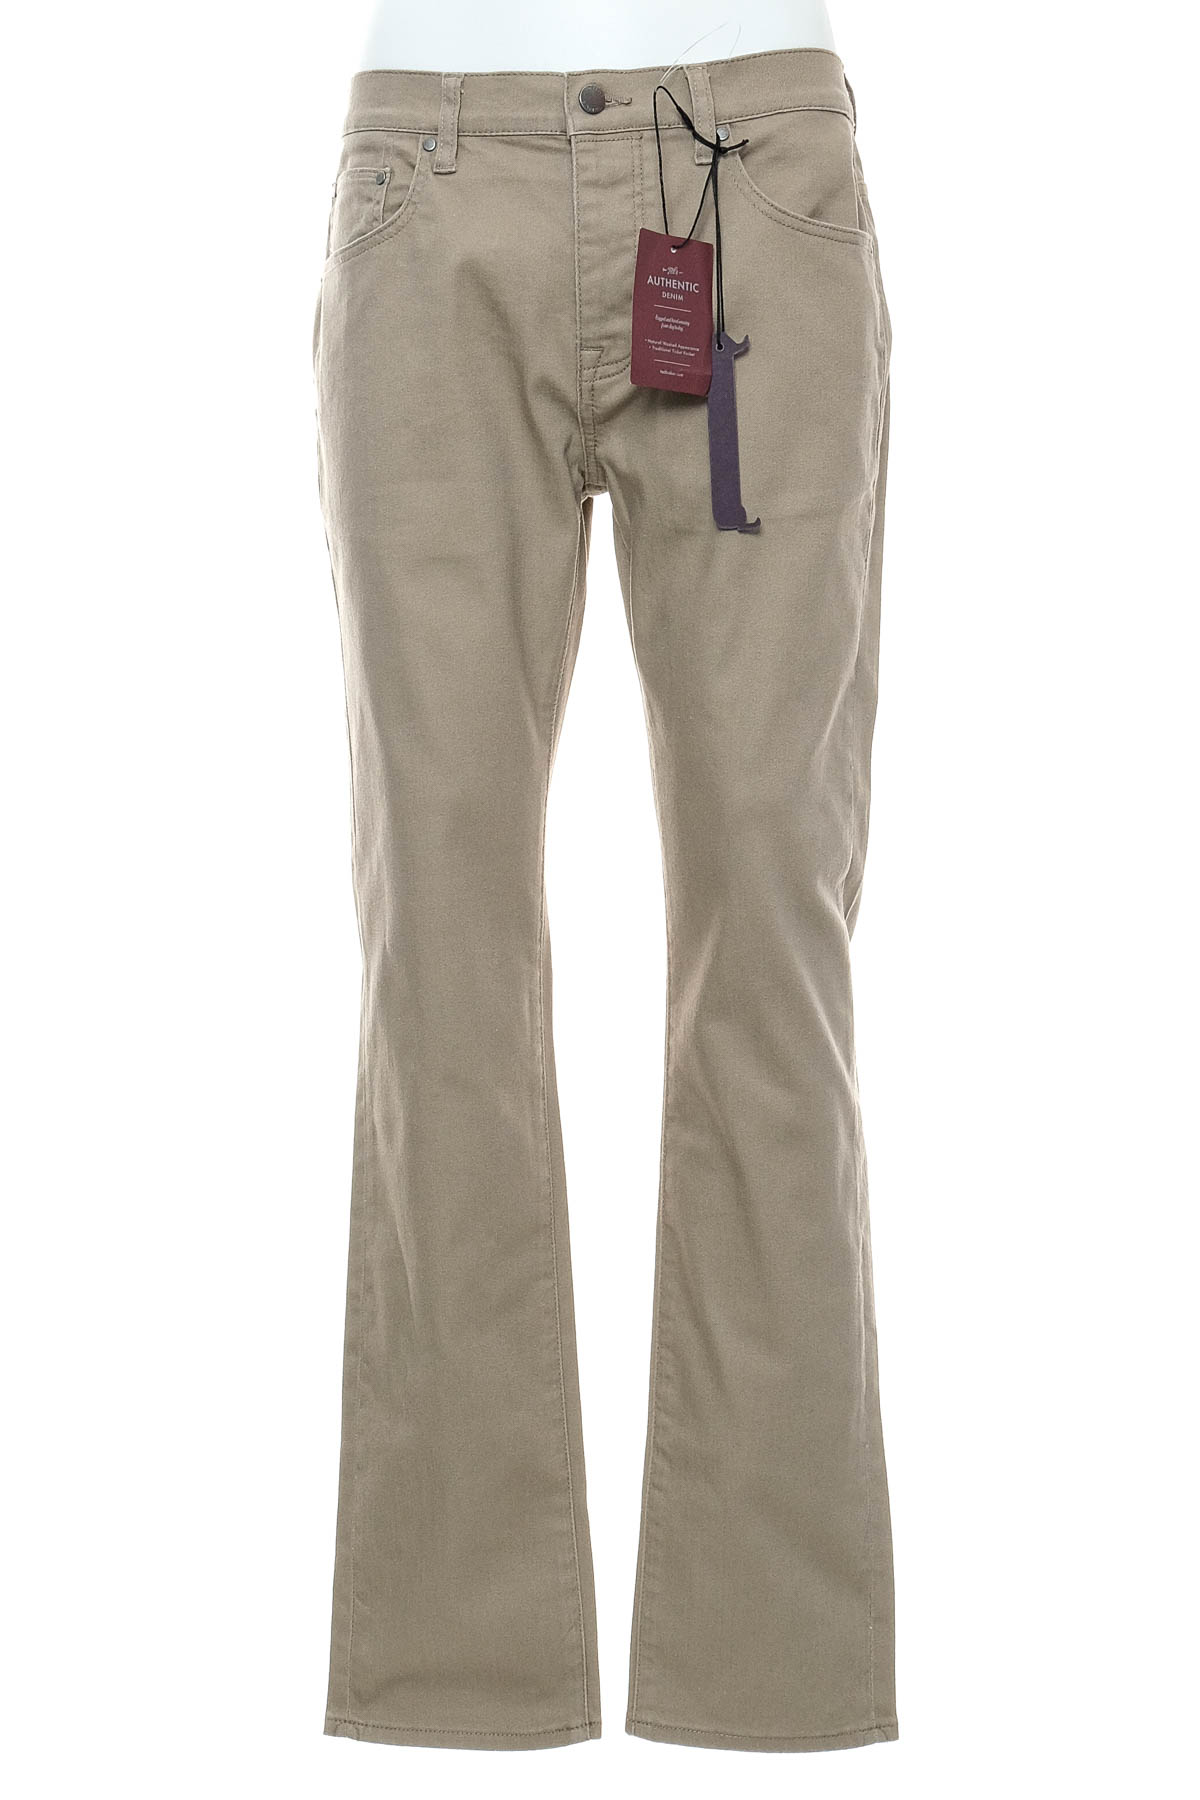 Ανδρικά παντελόνια - TED BAKER - 0